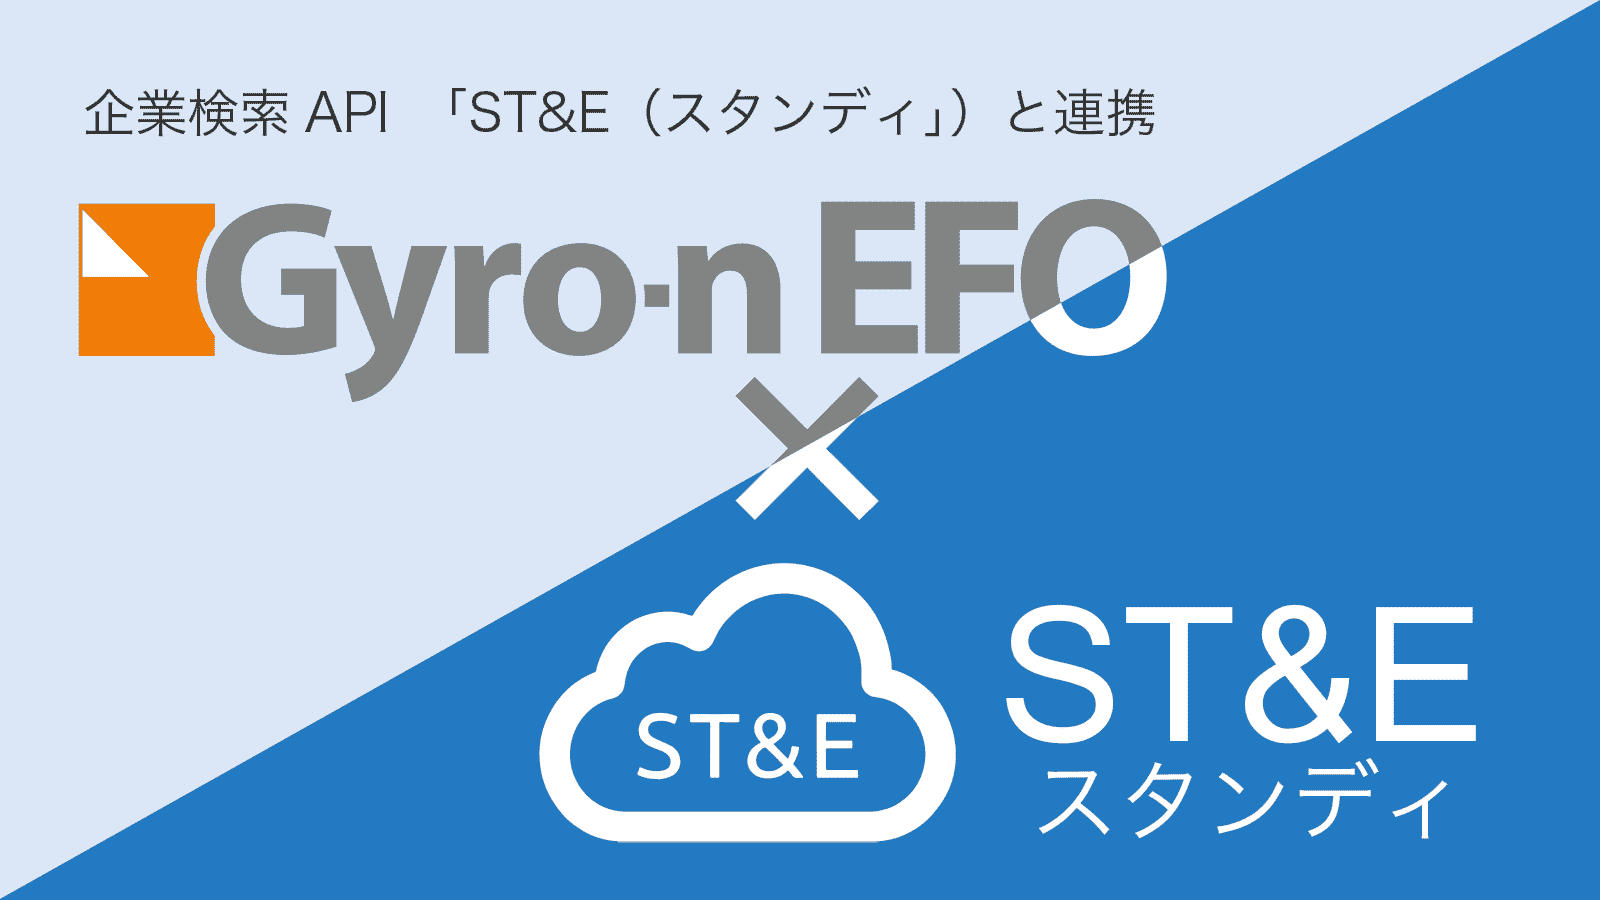 Gyro-n EFO×ST&E(スタンディ) 